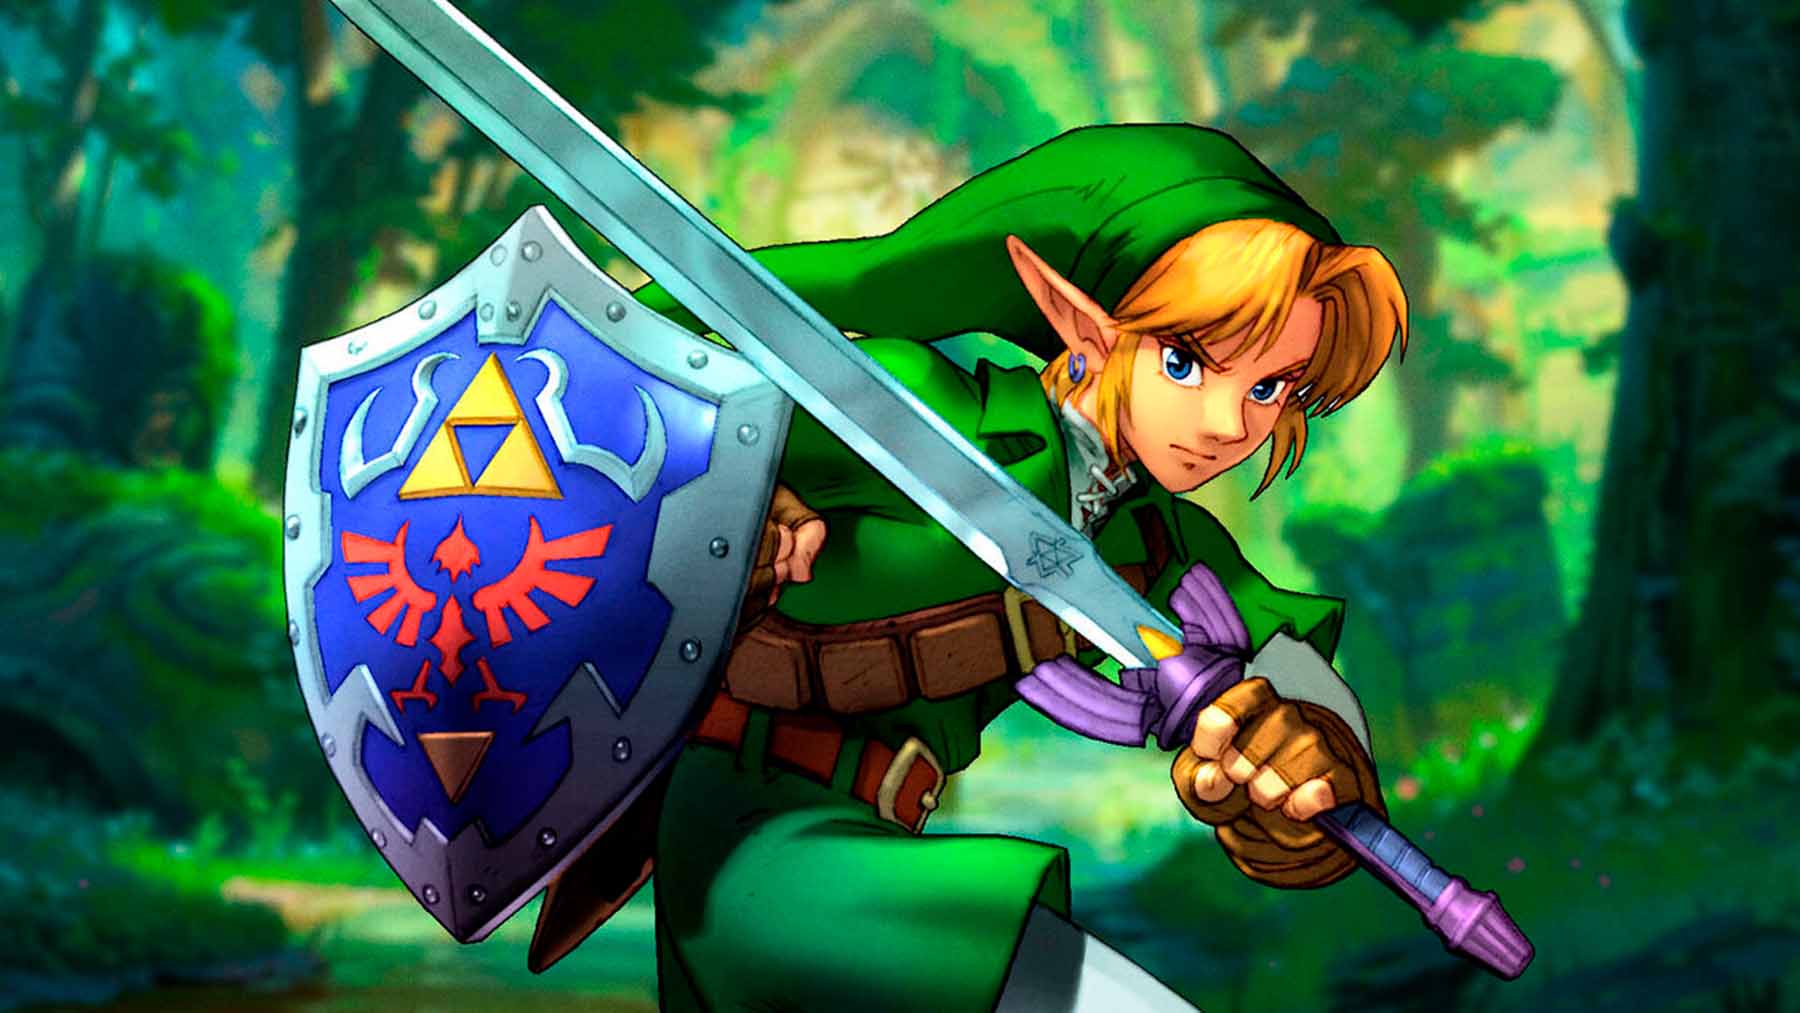 ‘The Legend of Zelda’ (Nintendo)